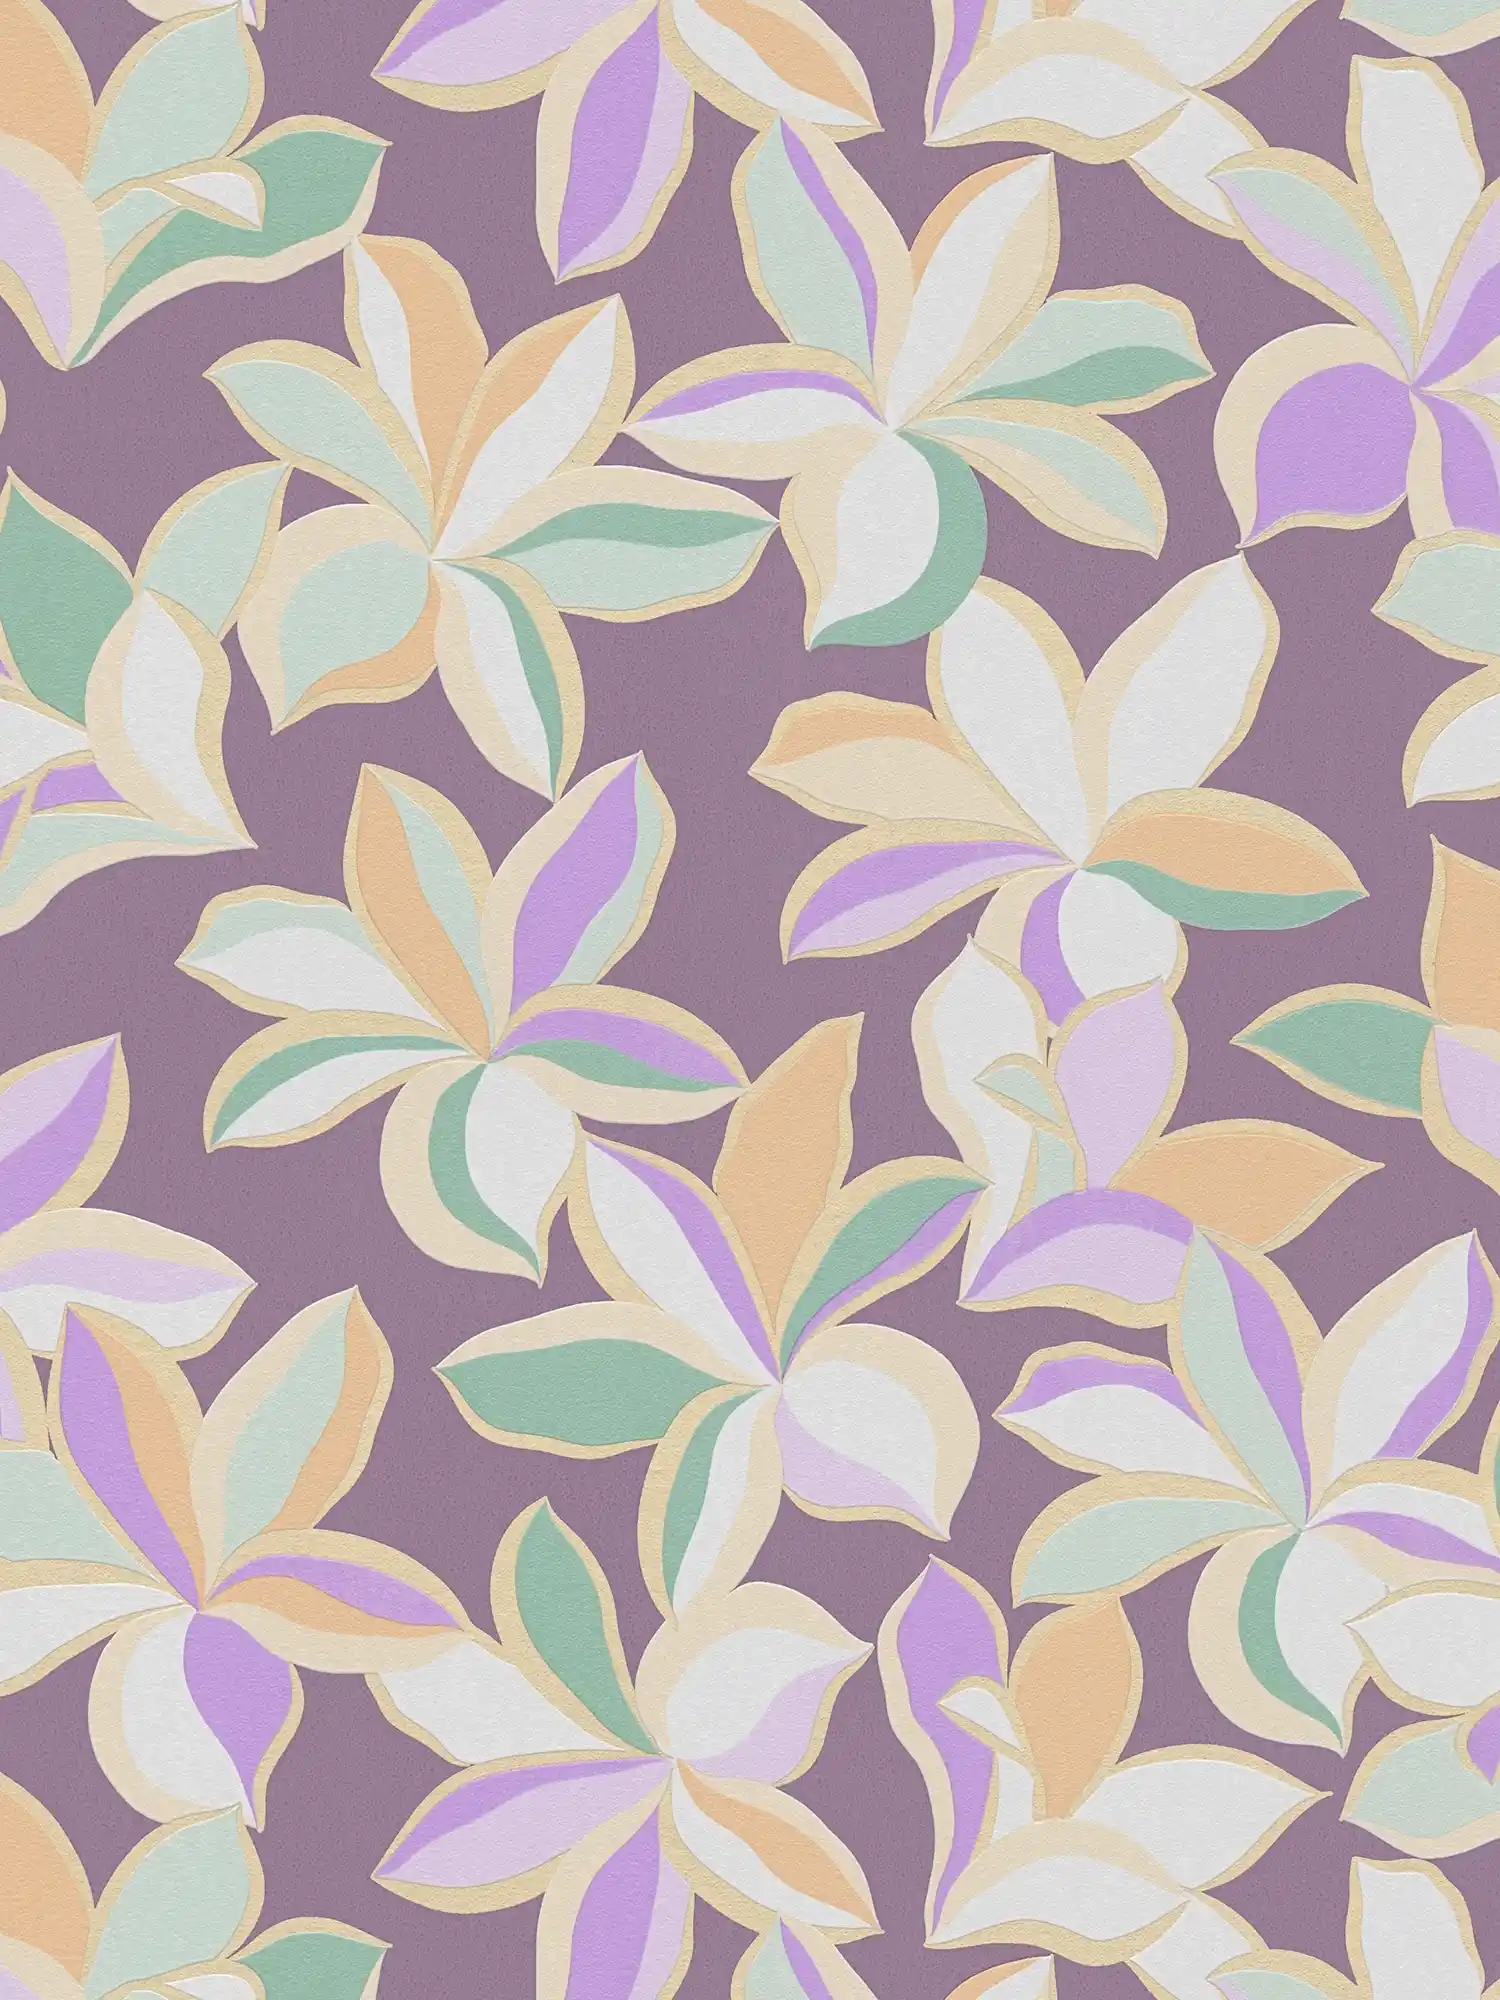         Blumentapete mit glänzendem Muster – Lila, Gold, Grün
    